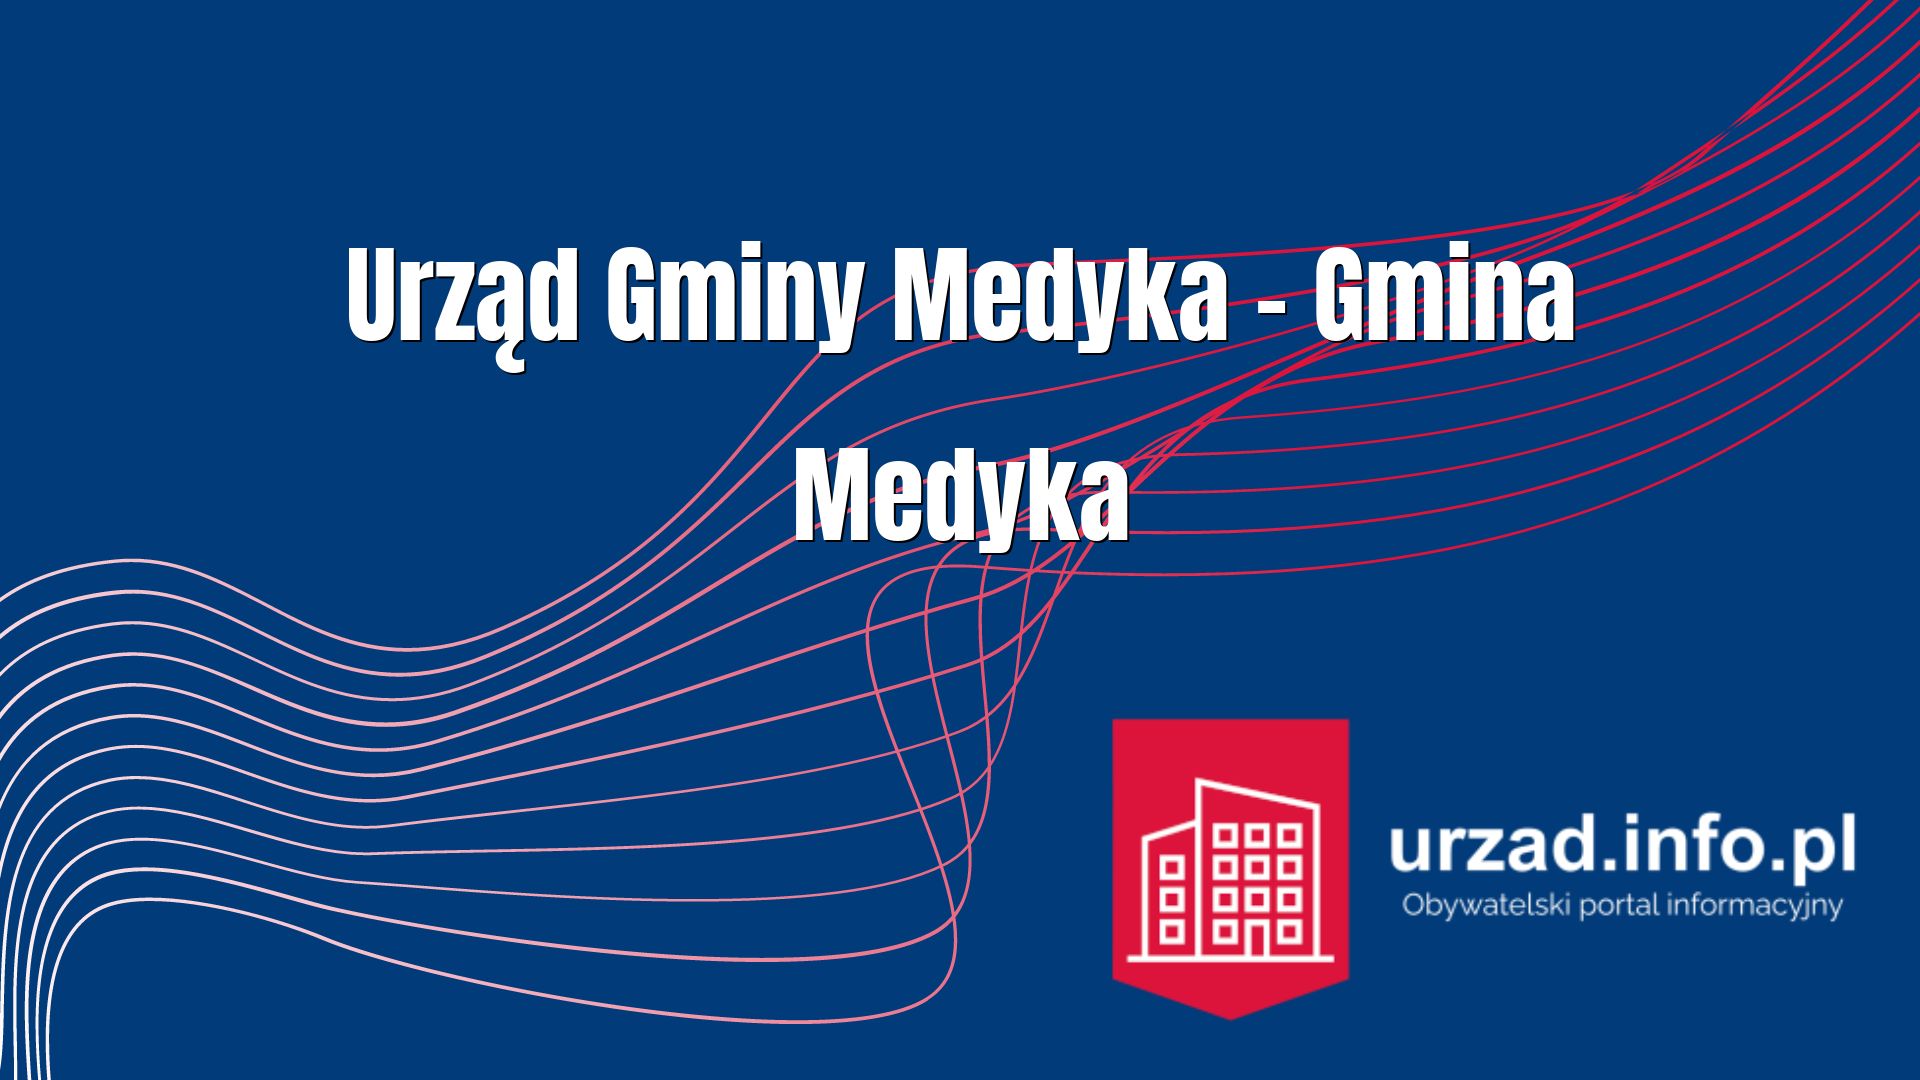 Urz d Gminy Medyka Gmina Medyka Urzad info pl